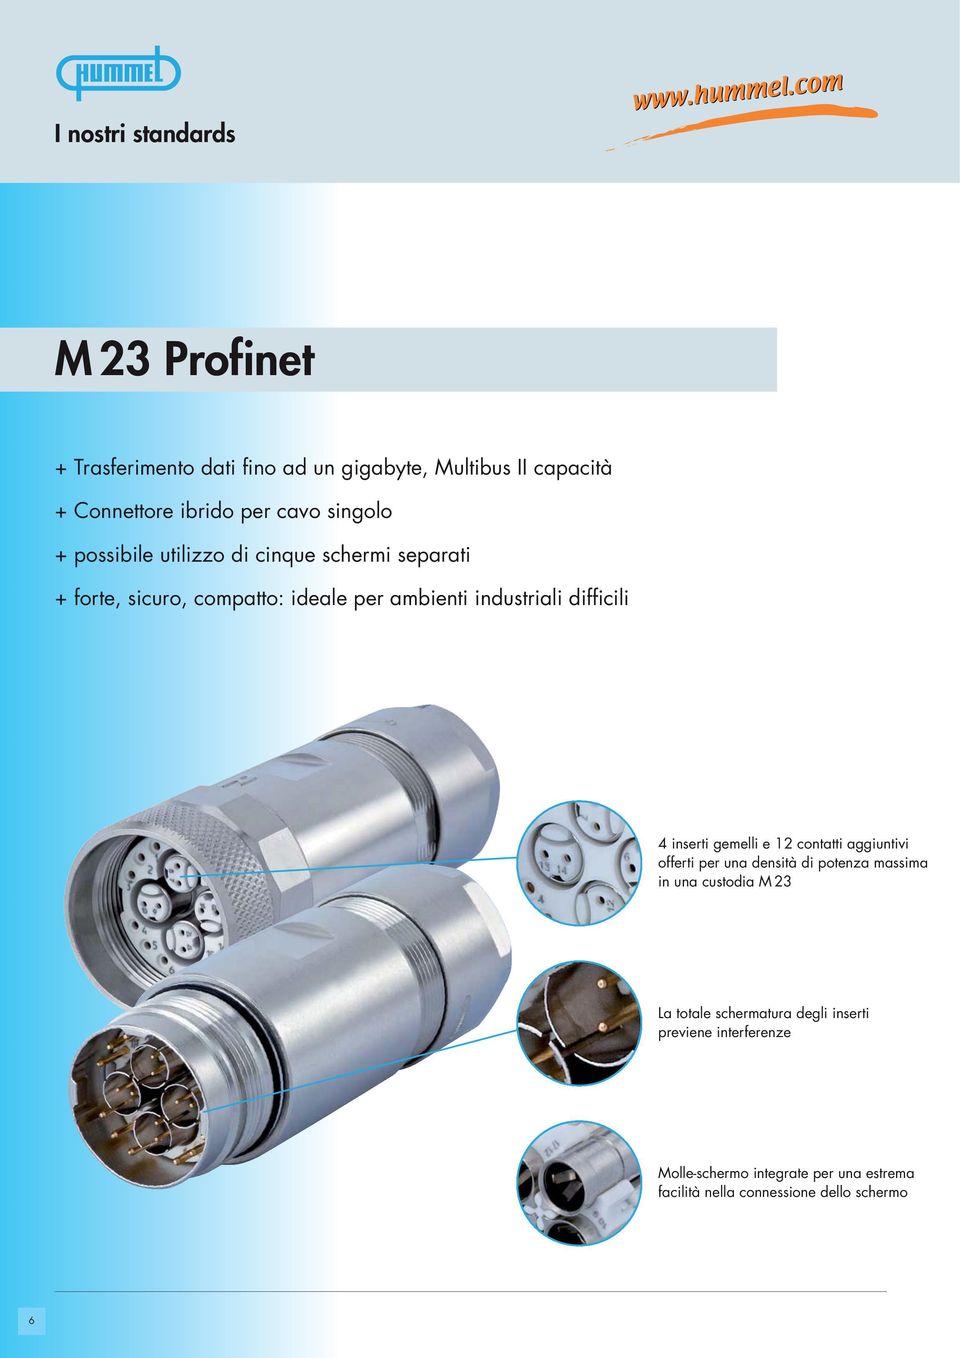 4 inserti gemelli e 12 contatti aggiuntivi offerti per una densità di potenza massima in una custodia M 23 La totale